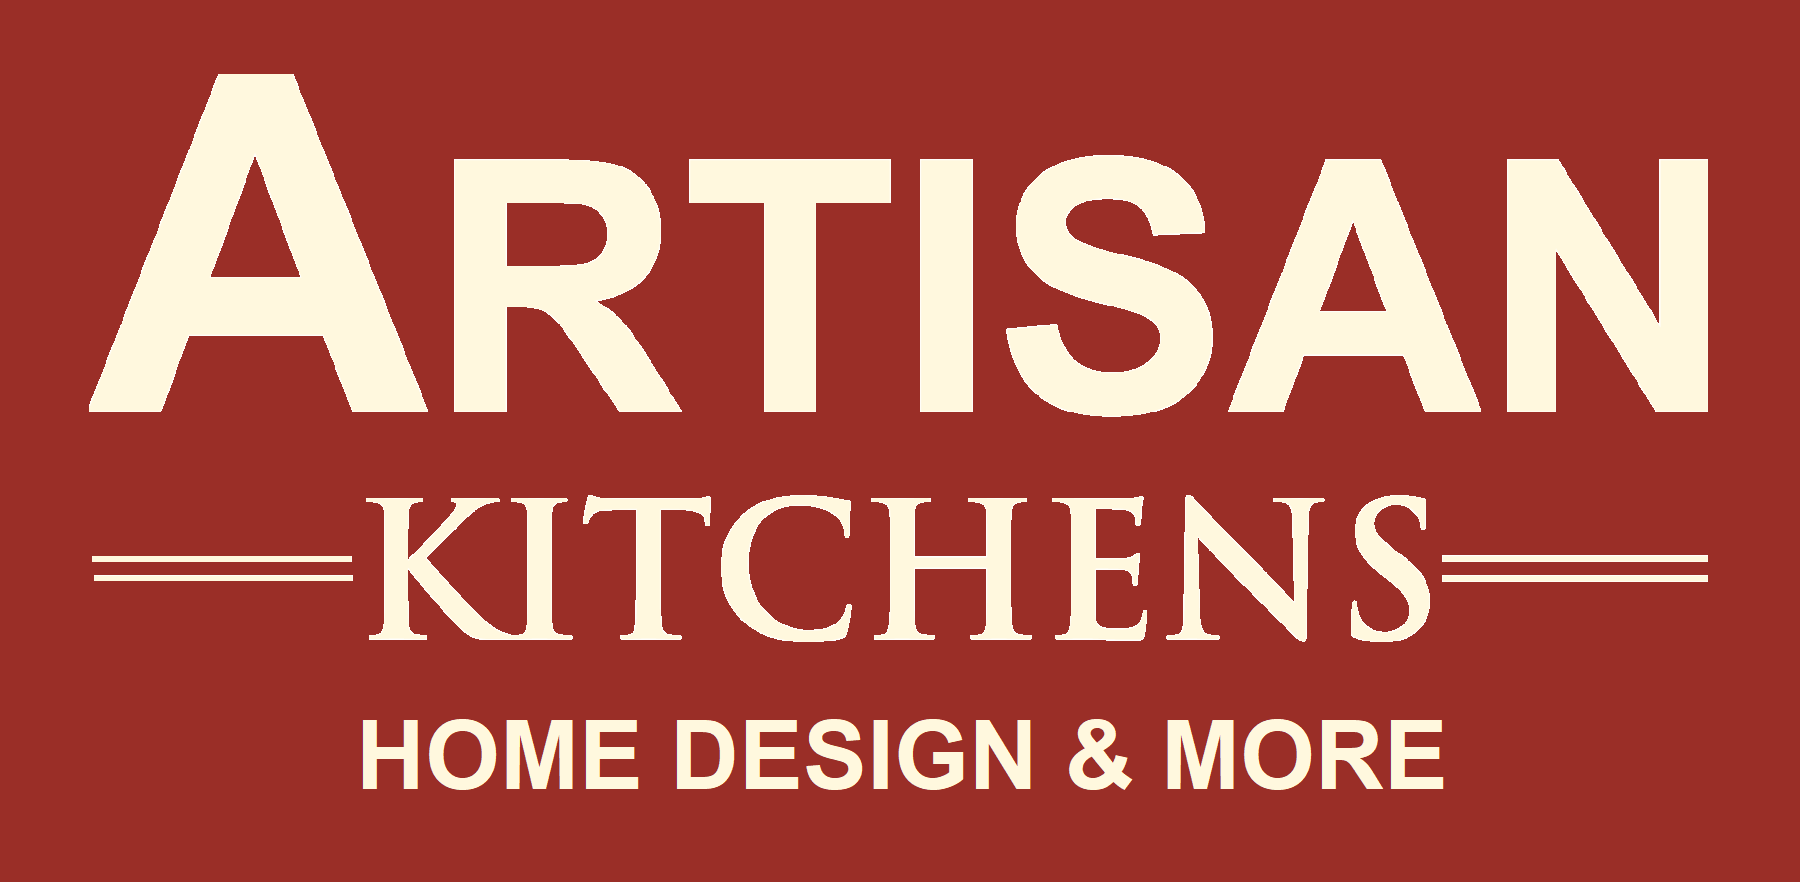 Kitchen Cabinets Brands Artisankitchenswv Com